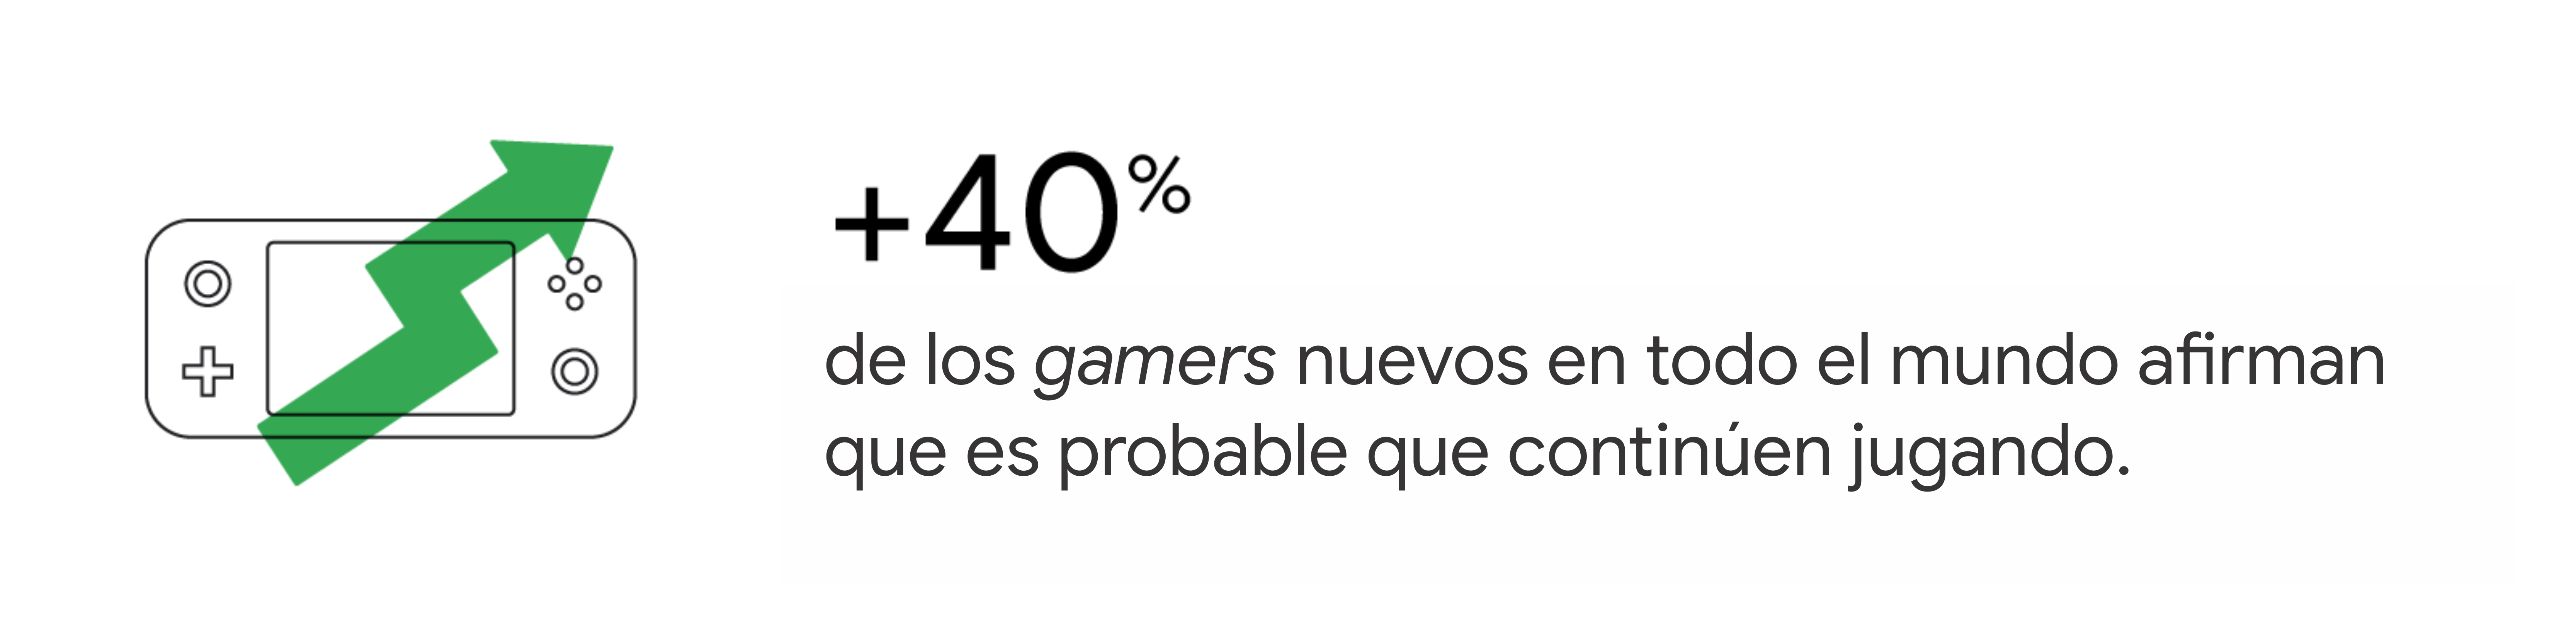 Una ilustración de un dispositivo de videojuegos portátil superpuesto a una flecha de crecimiento que representa la afirmación de que el 40% de los gamers nuevos en todo el mundo afirman que es probable que continúen jugando.